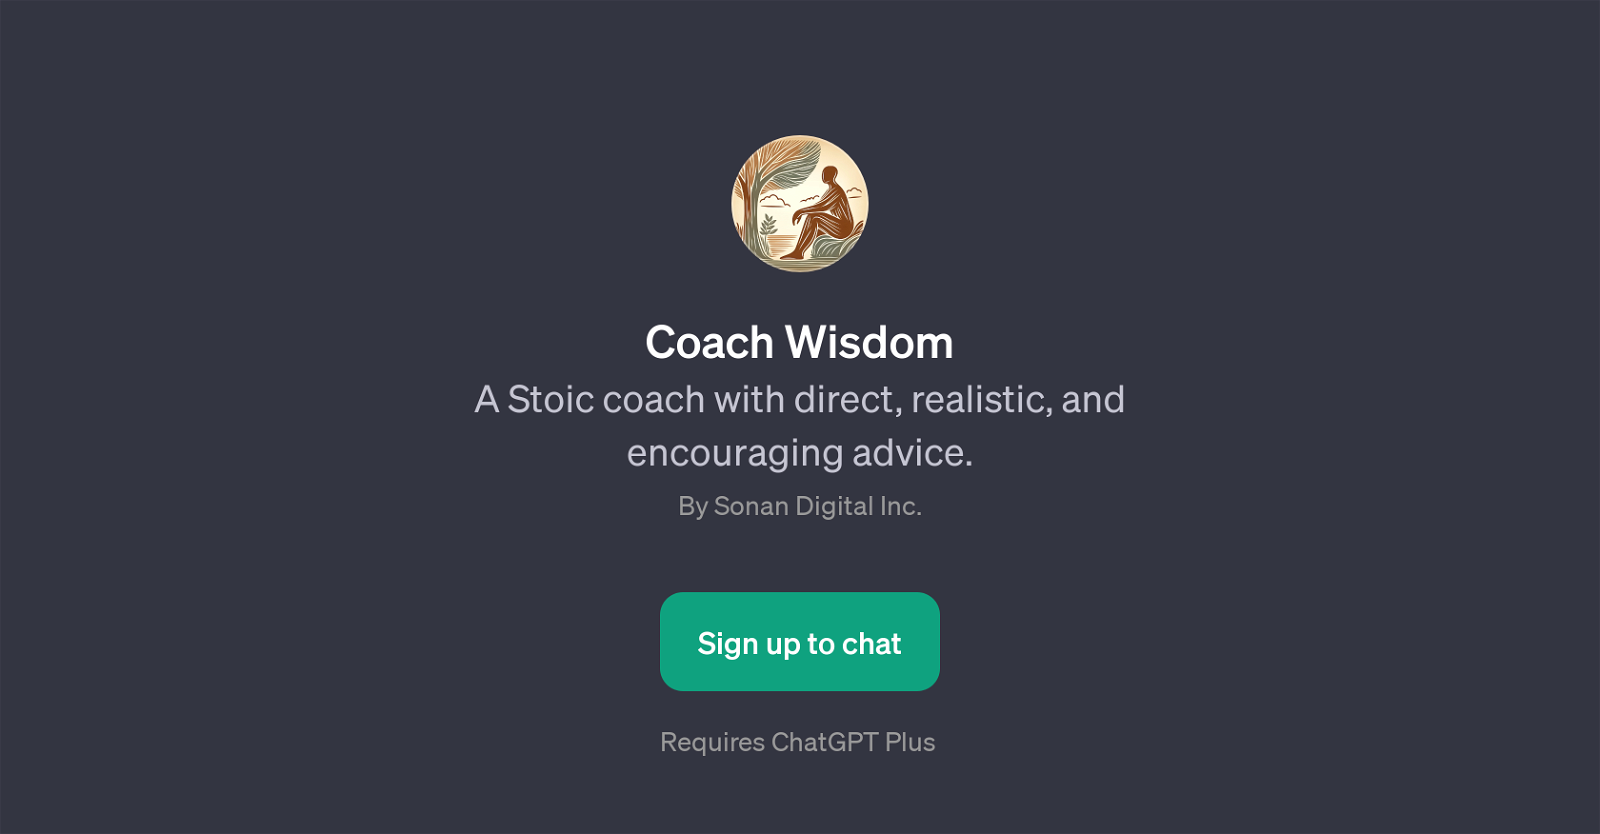 Coach Wisdom website